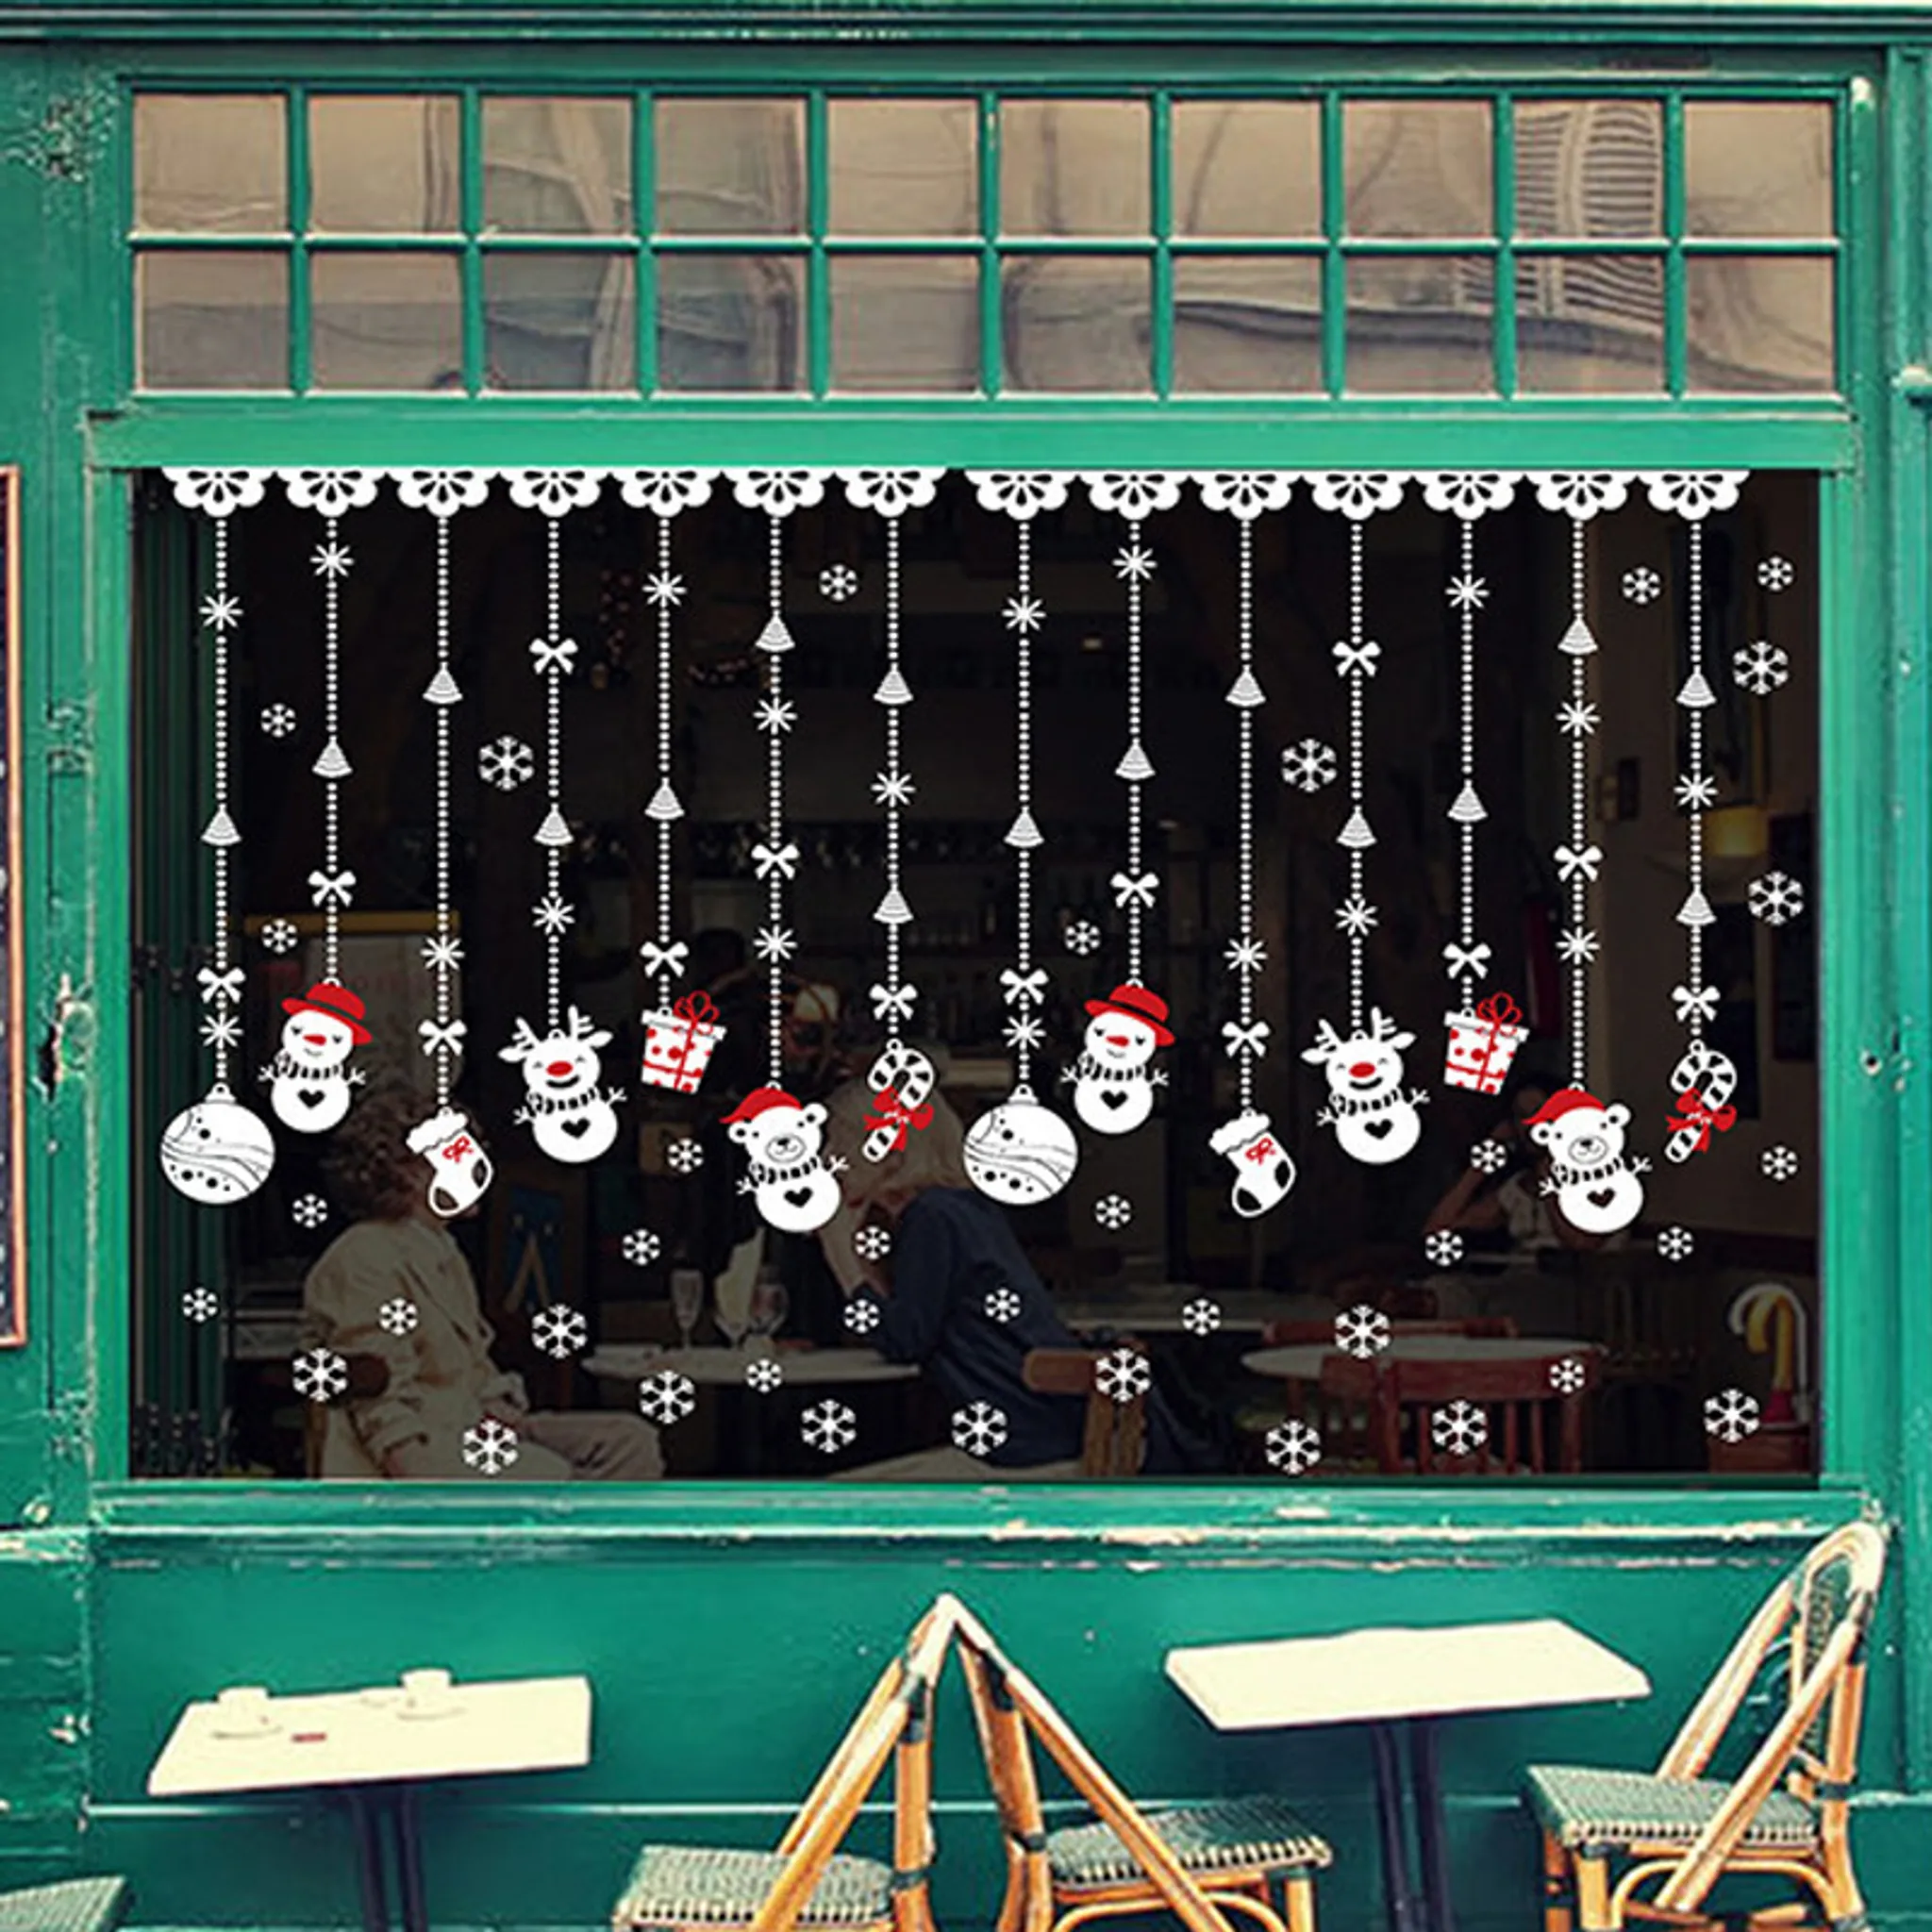  Fensterbilder Weihnachten, 260 Weihnachten Aufkleber Fensterdeko  Selbstklebend Fensteraufkleber Für Weihnachtsdeko Winter Deko  Wiederverwendbar Schneeflocken Weihnachtsmann Rentier aufkleber